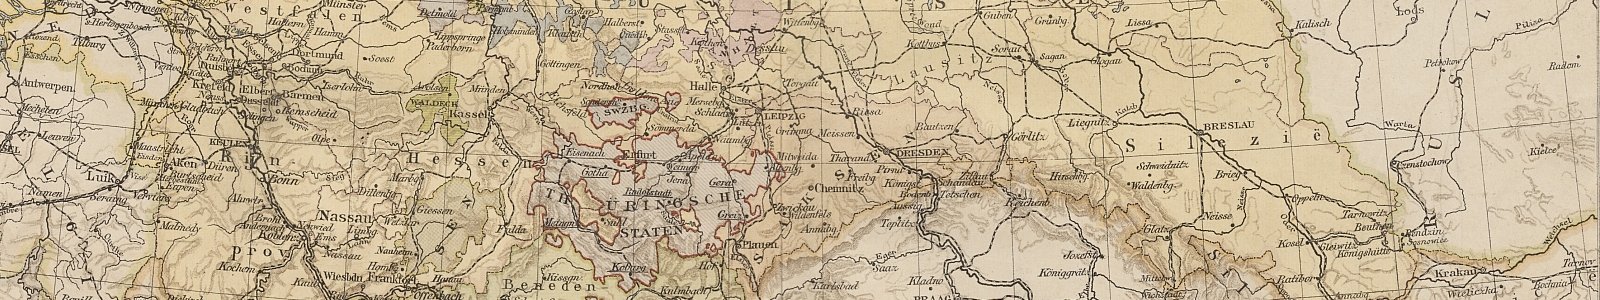 Detail kaart Duitsland 24e editie Bosatlas, 1918.